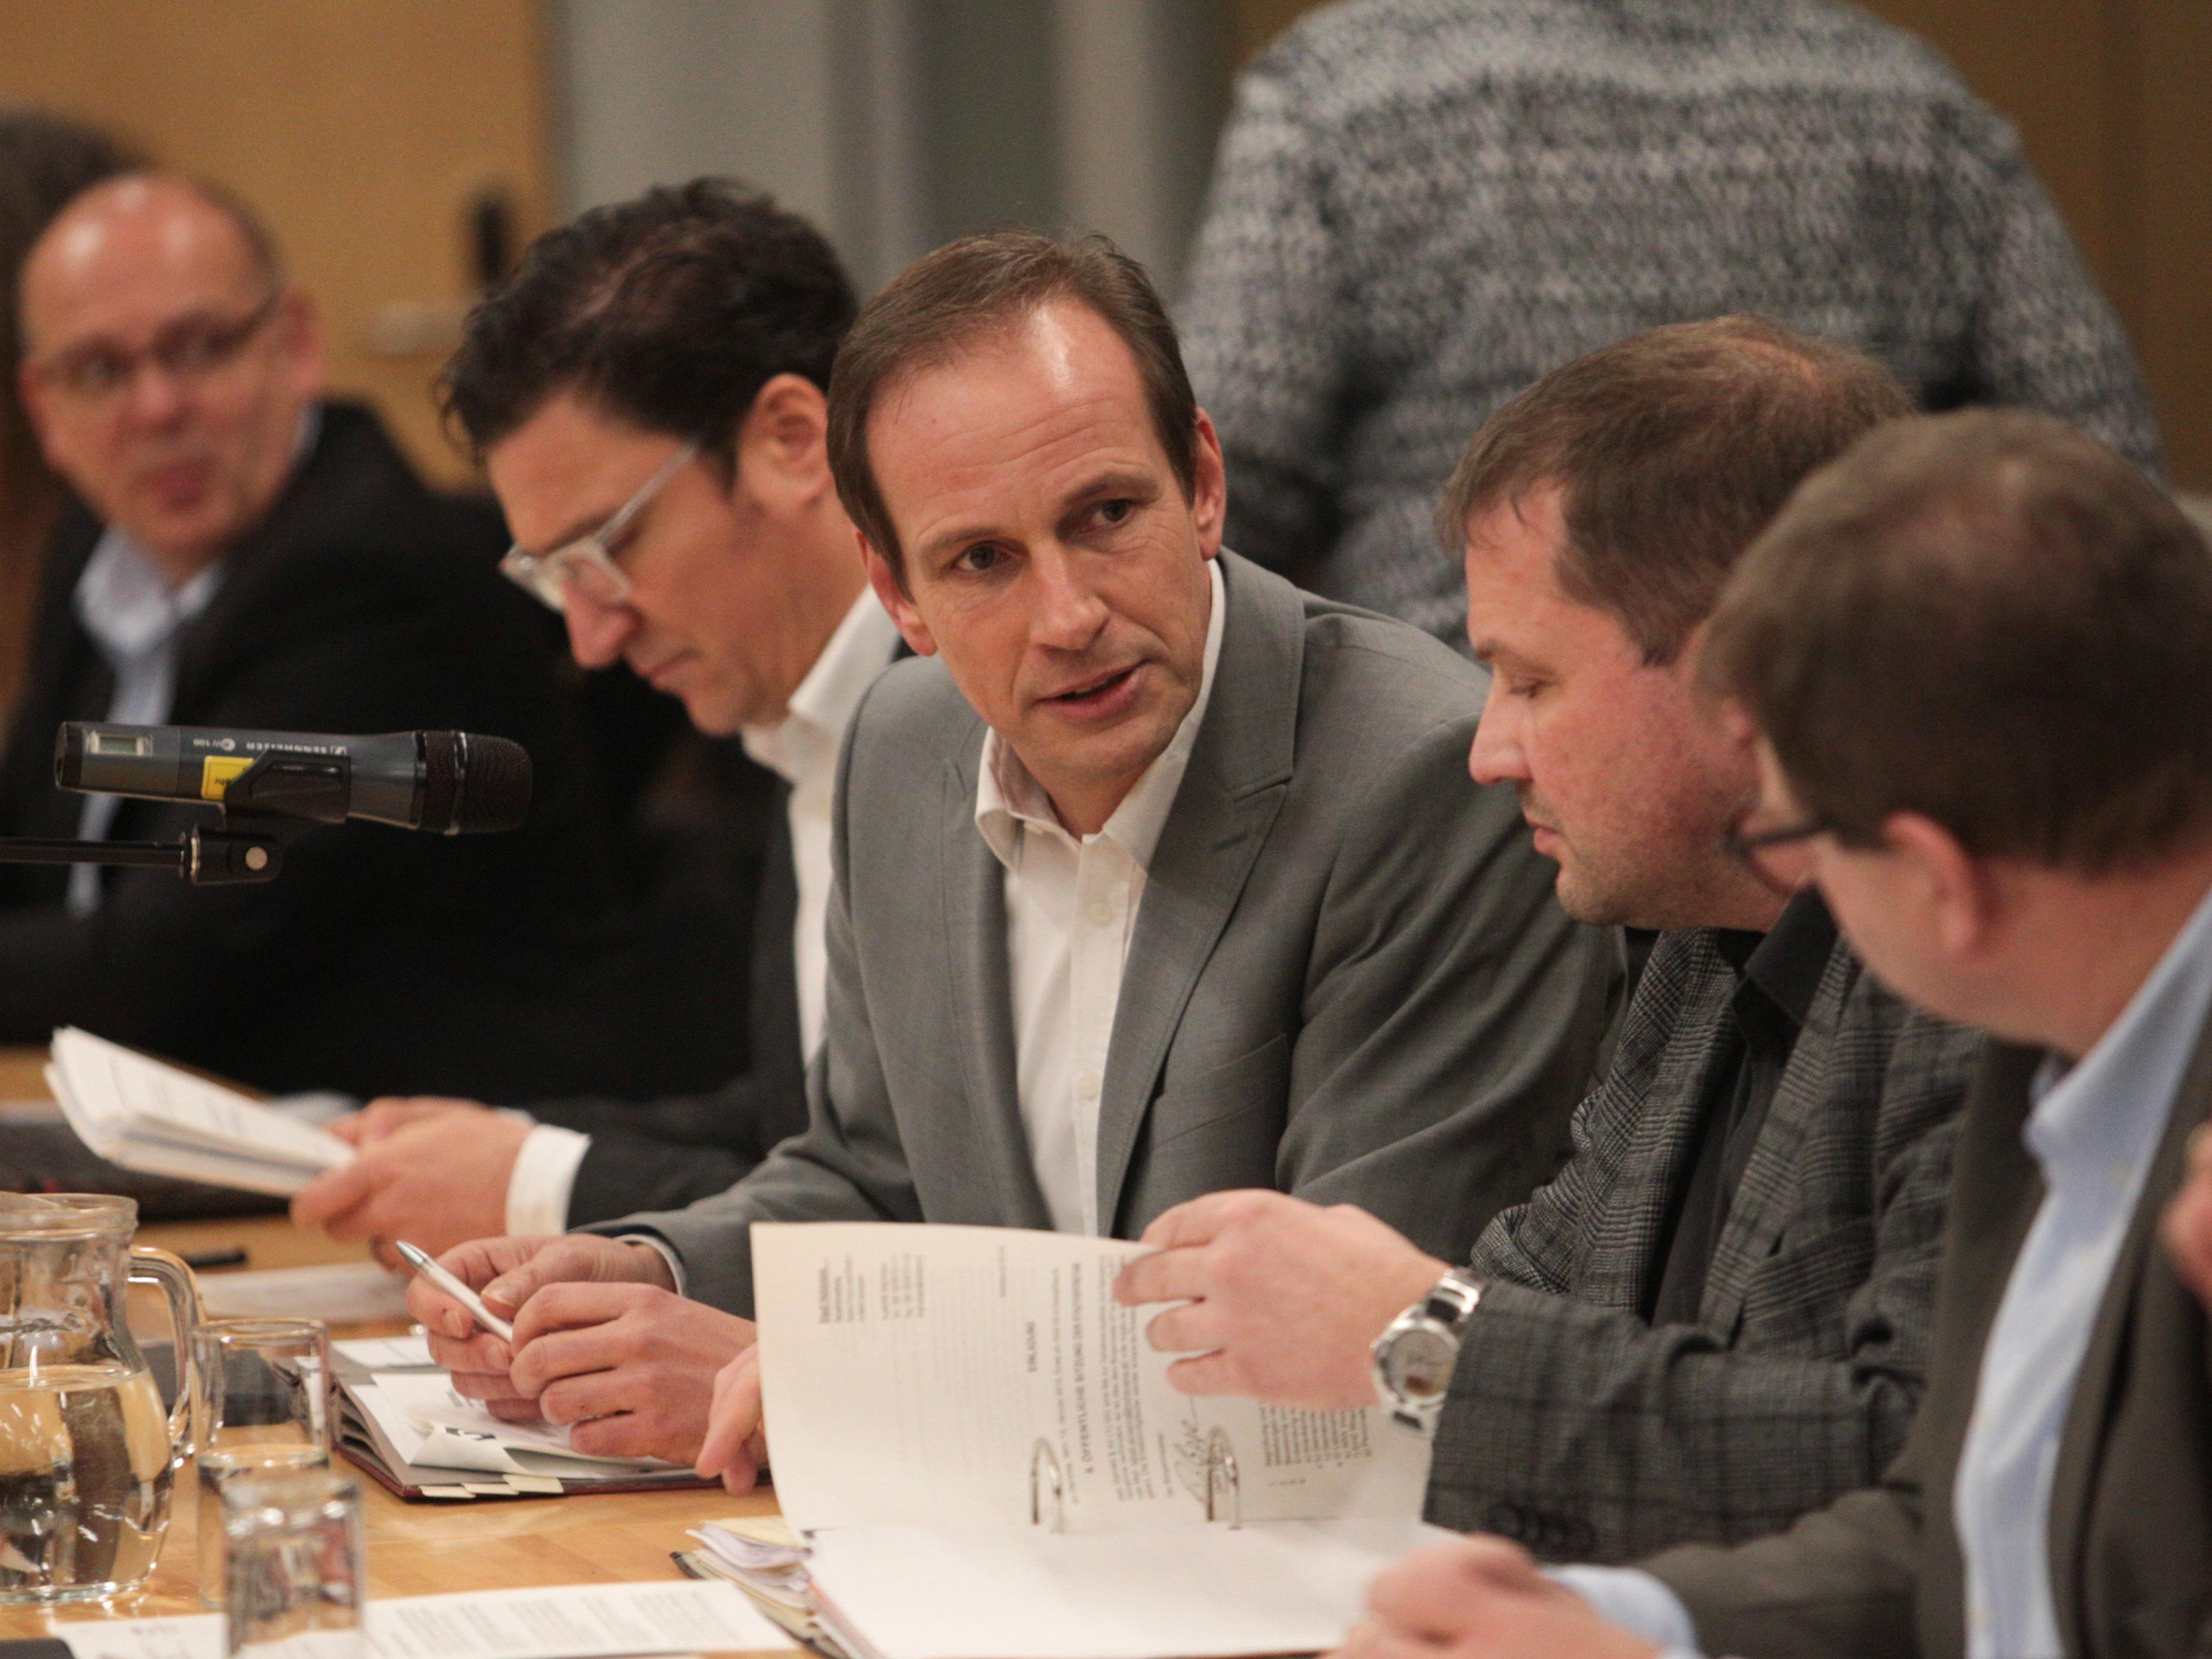 Dieter Egger bringt seine Umbaupläne im Stadtrat durch - mit den Stimmen der ÖVP.